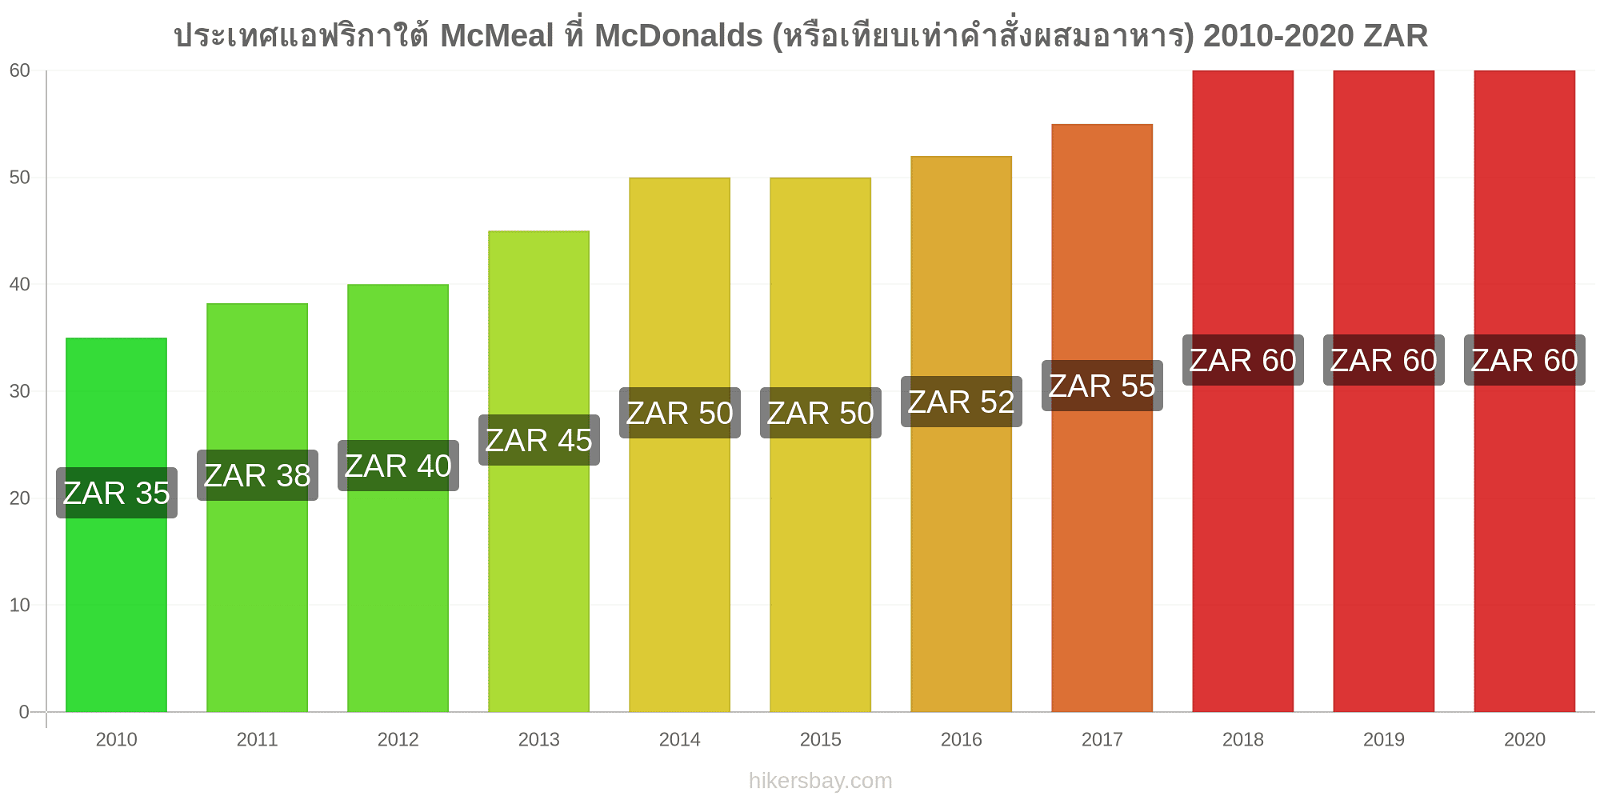 ประเทศแอฟริกาใต้ การเปลี่ยนแปลงราคา McMeal ที่ McDonalds (หรือเทียบเท่าคำสั่งผสมอาหาร) hikersbay.com